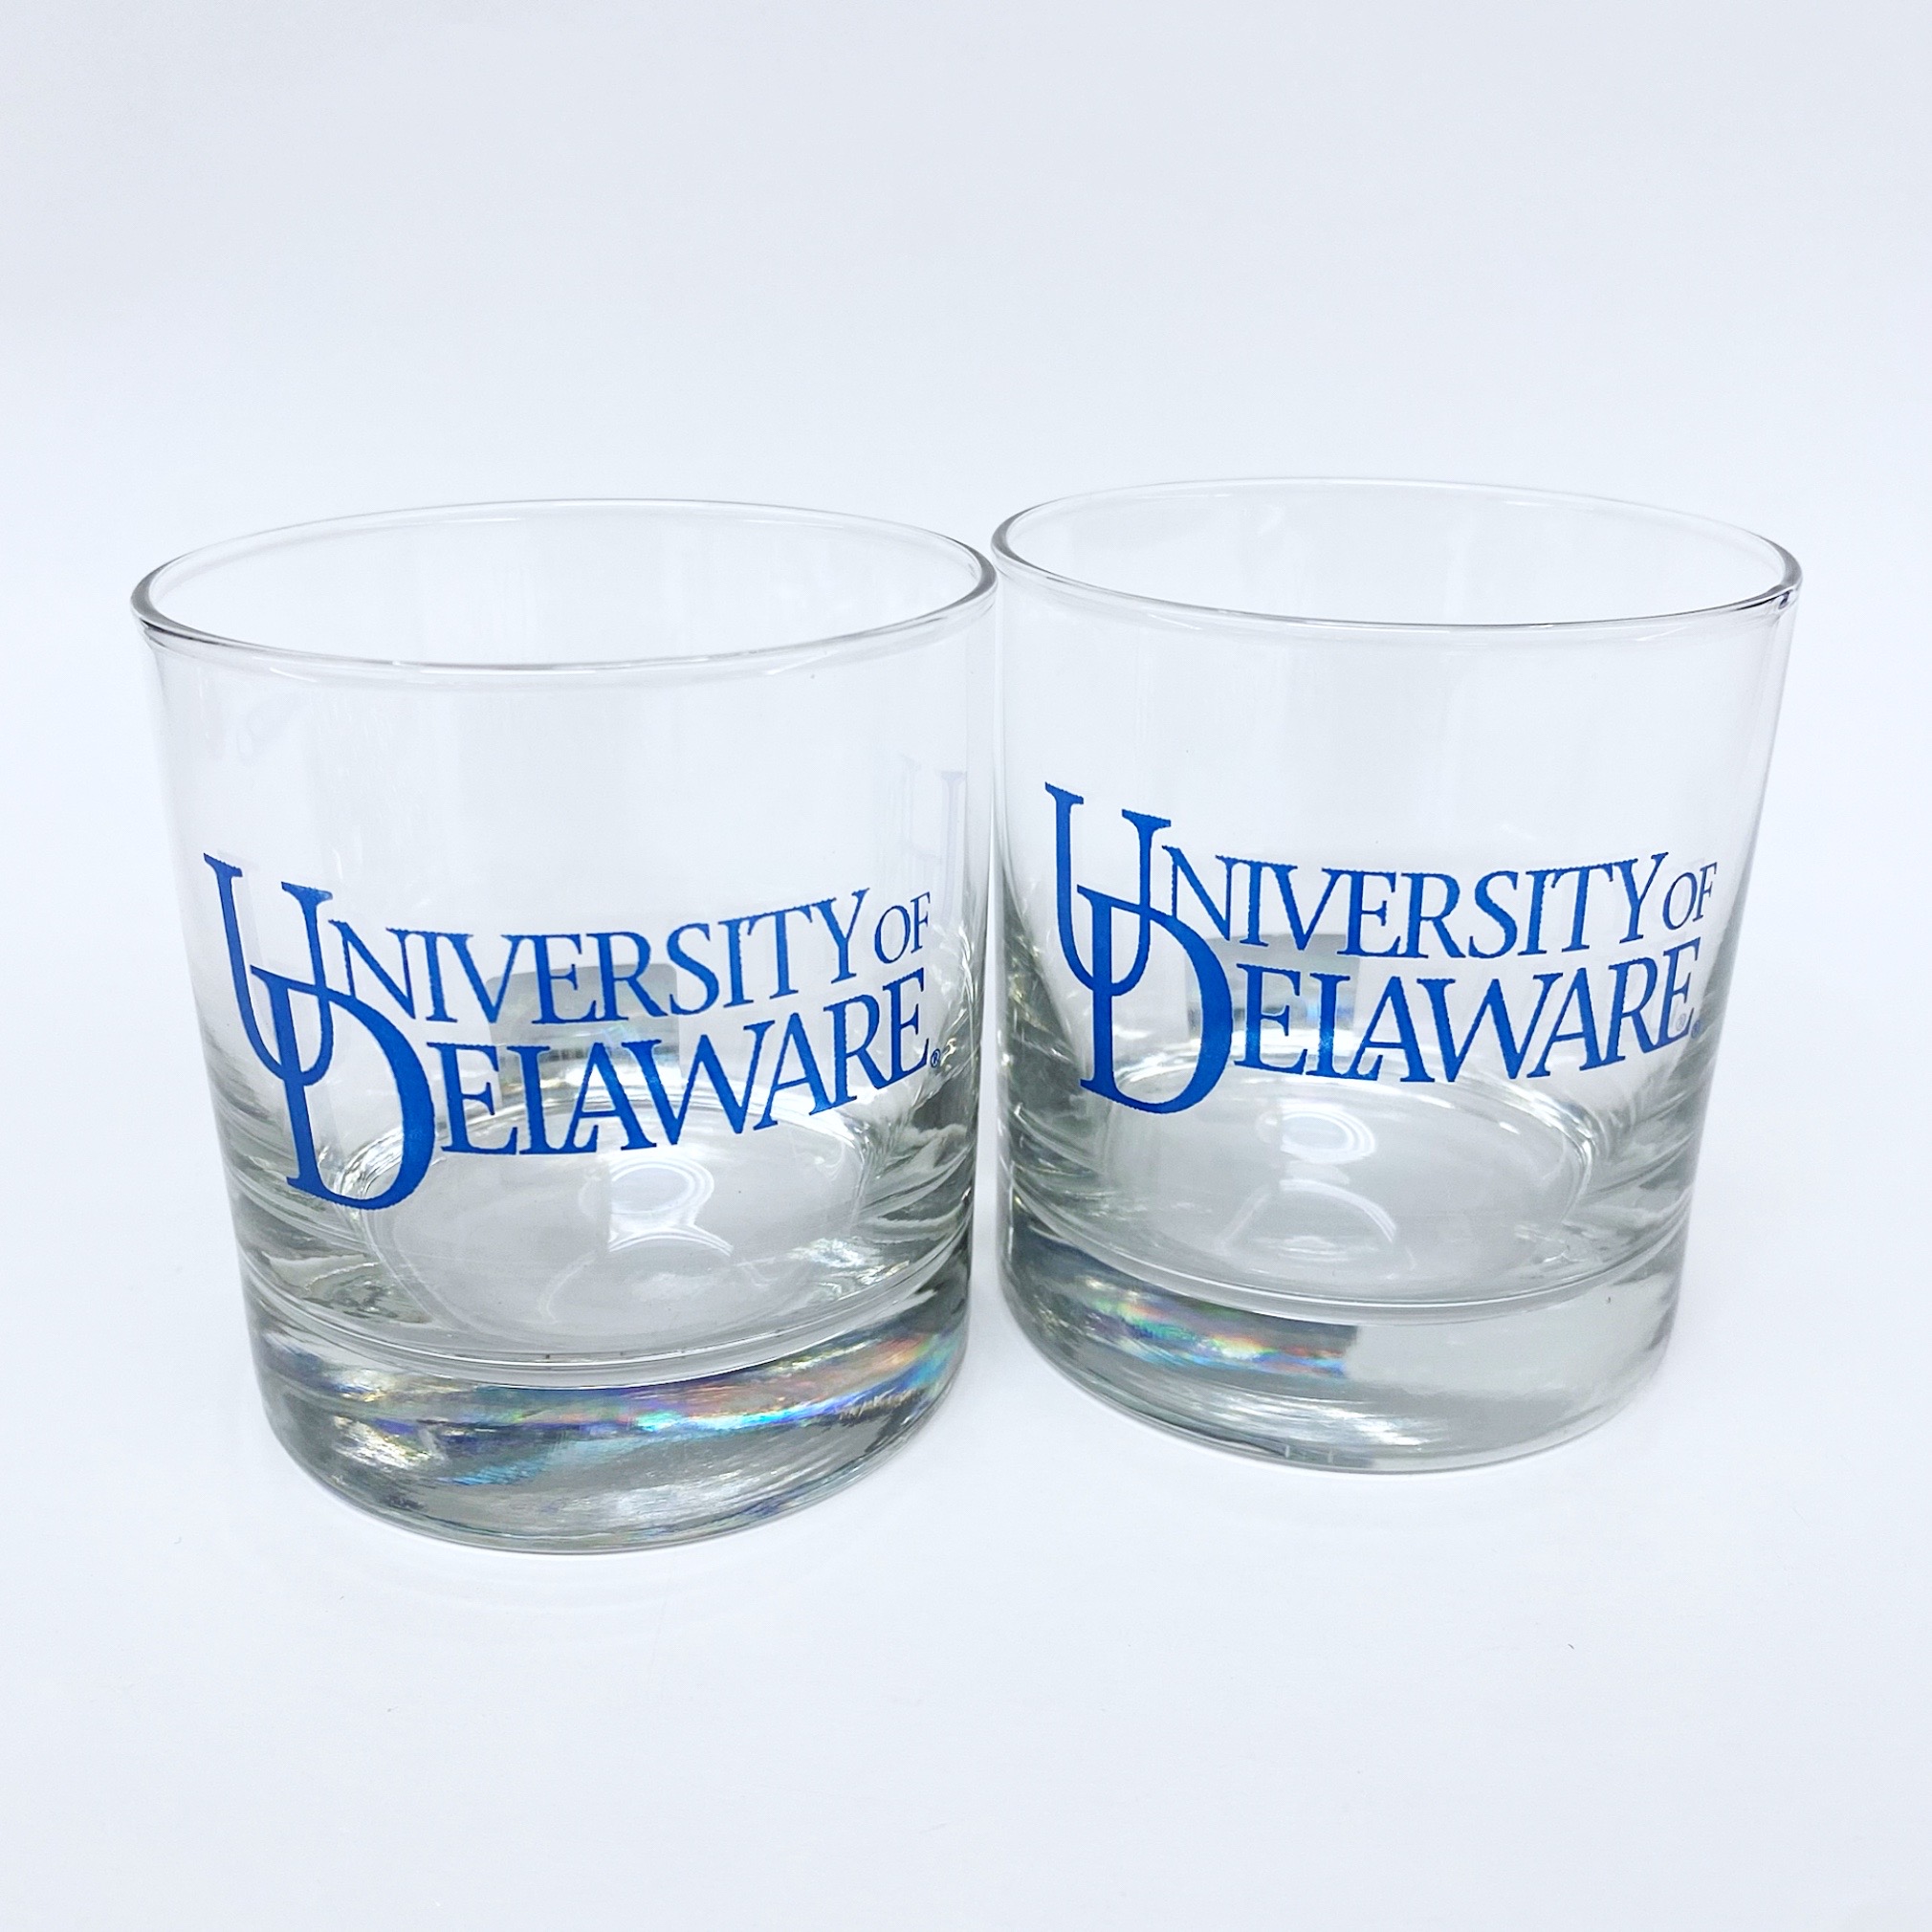 https://www.national5and10.com/wp-content/uploads/2018/12/University-of-Delaware-Rocks-Glasses-1-1.jpg